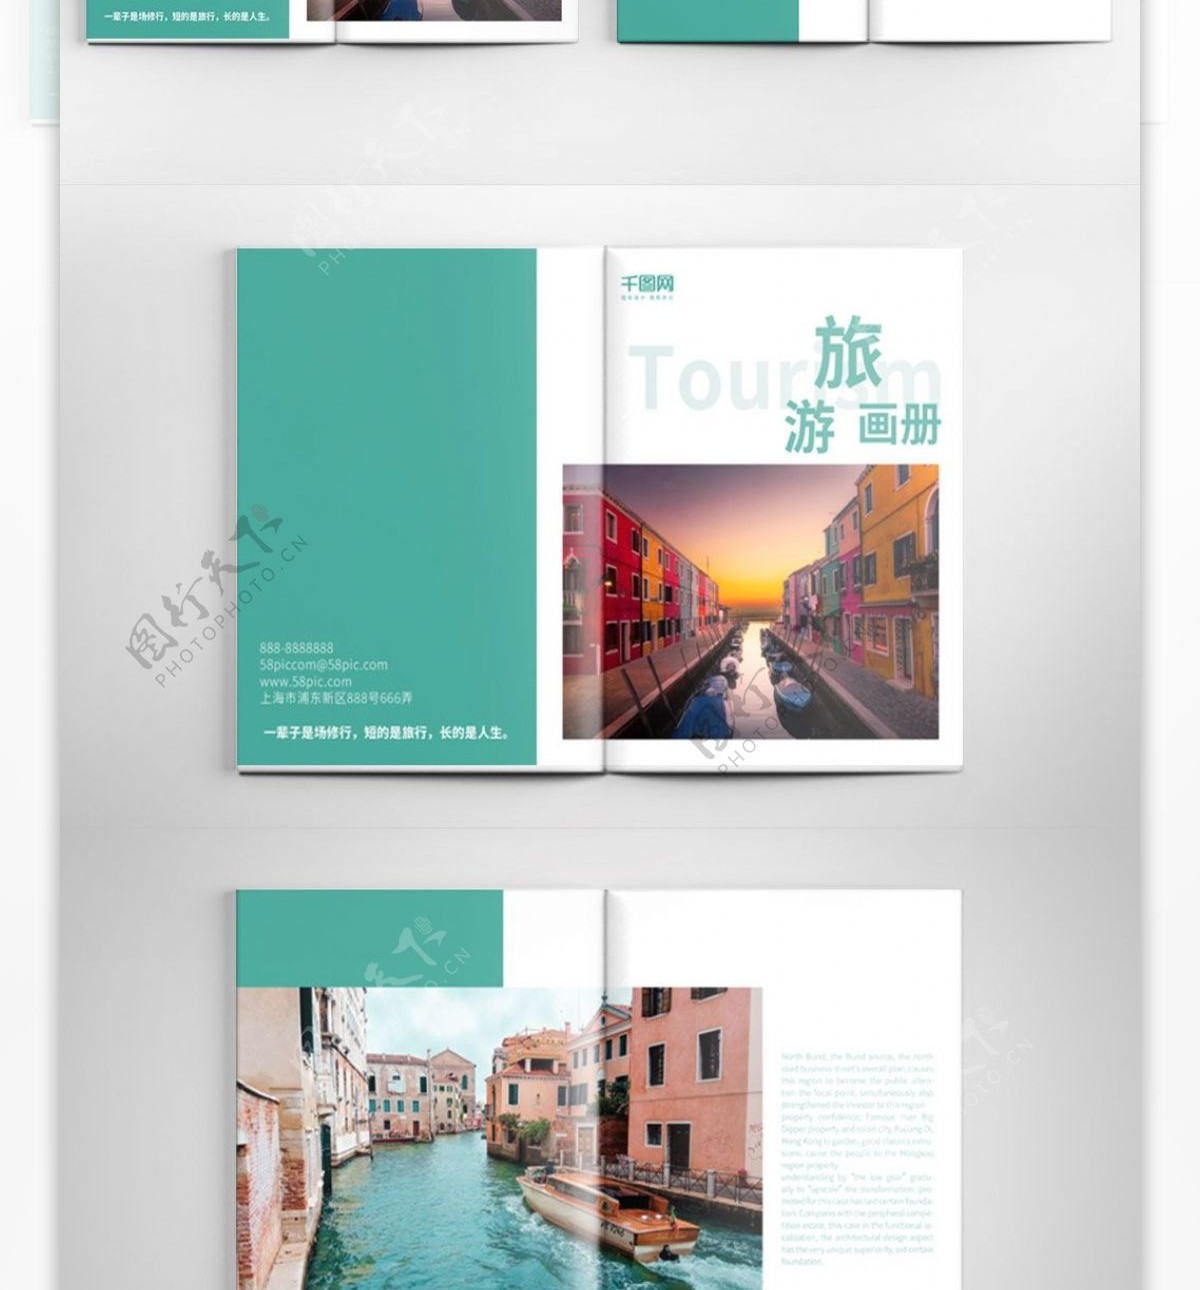 青色创意旅游画册设计PSD模板